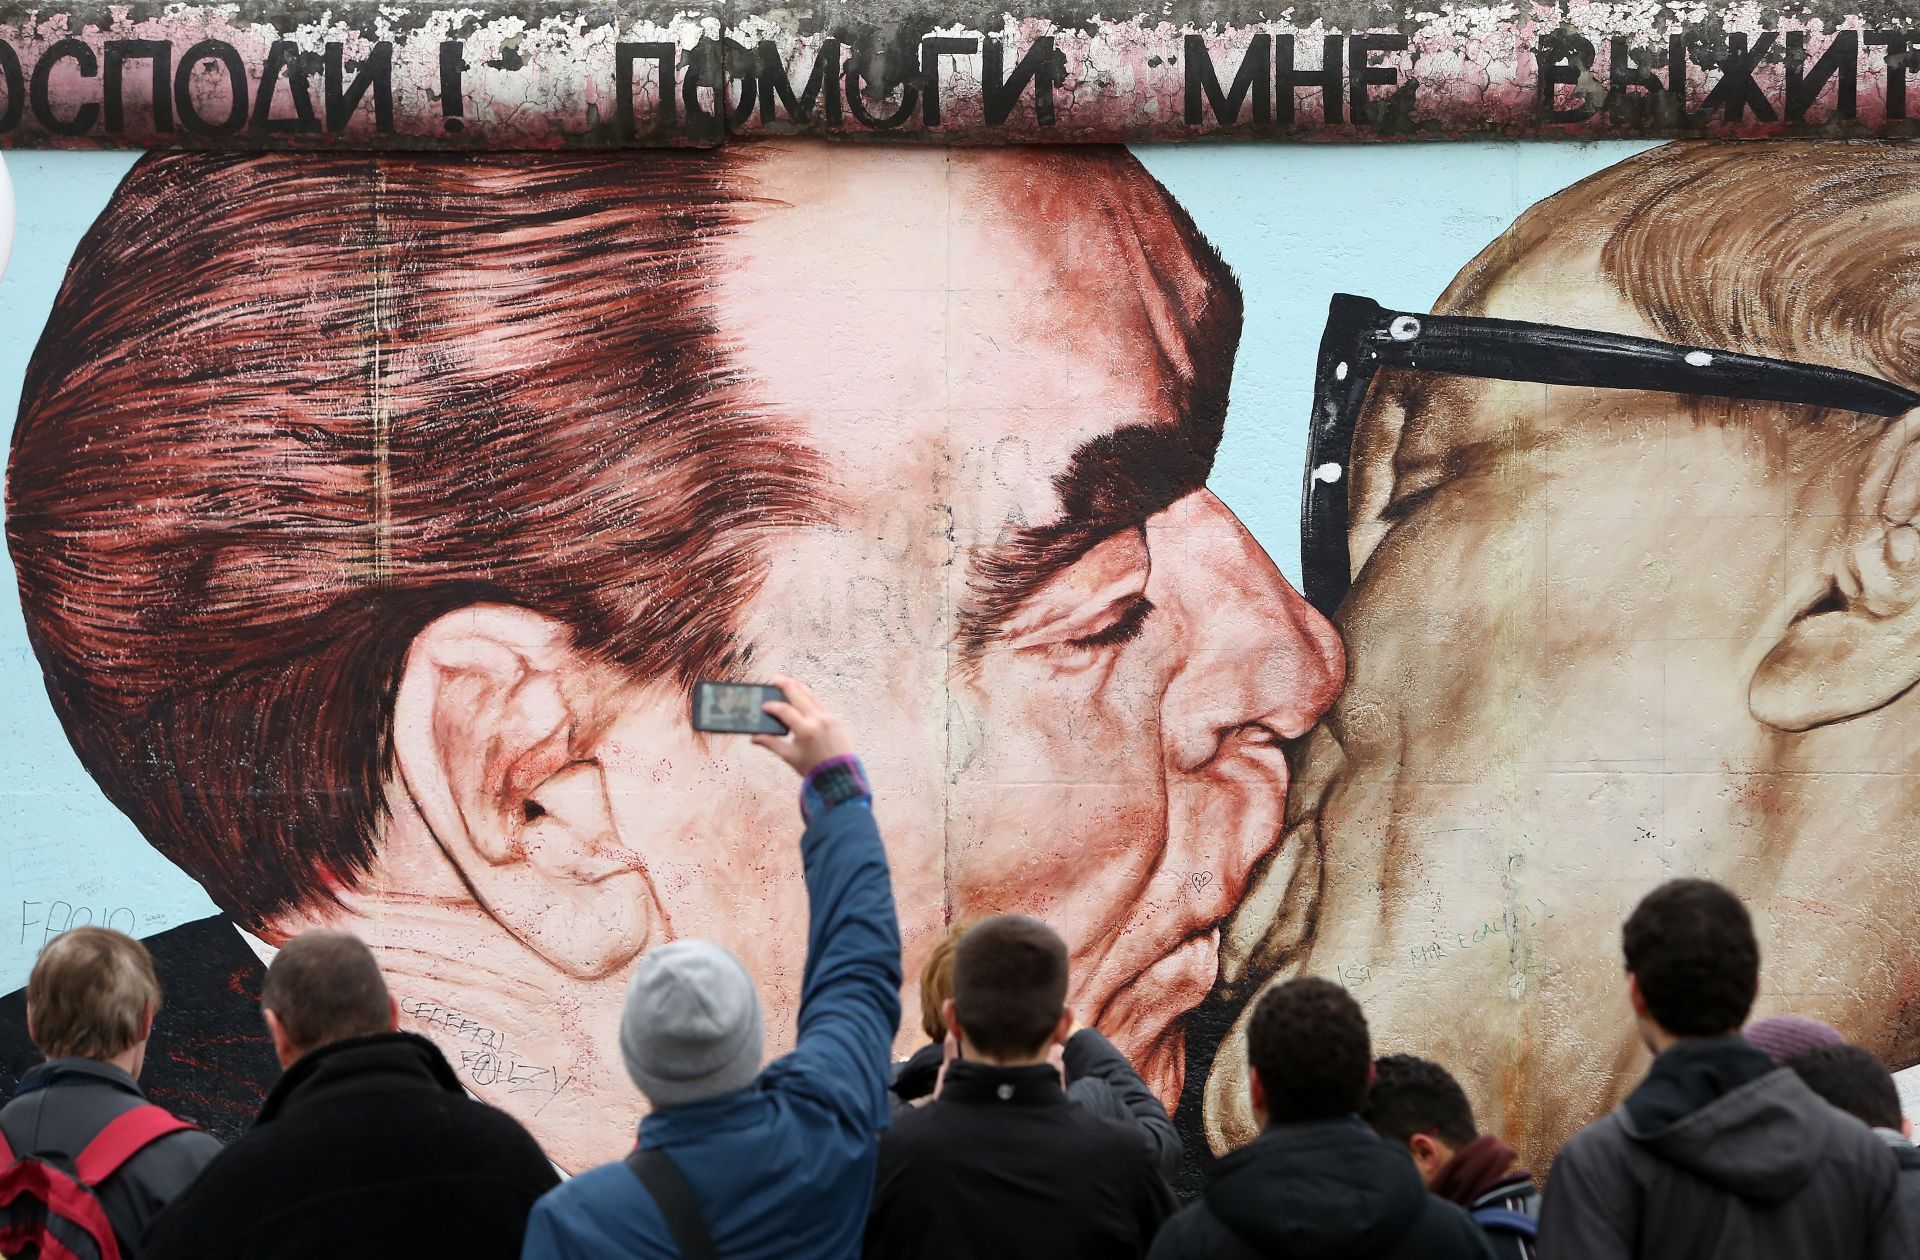  Най-популярният и запомнящ се е с голям надпис "Господи, помогни ми да оцелея сред тази смъртоносна любов". Надписът с червени букви е обхванал като рамка рисунката със заглавие "Братска целувка". Прерисуваната снимка от 1979 година на двамата комунистически лидери на съветския съюз и ГДР, която познава света - Леонид Брежнев и Ерих Хонекер, демонстрира с братска целувка съветската и източногерманската власт. 